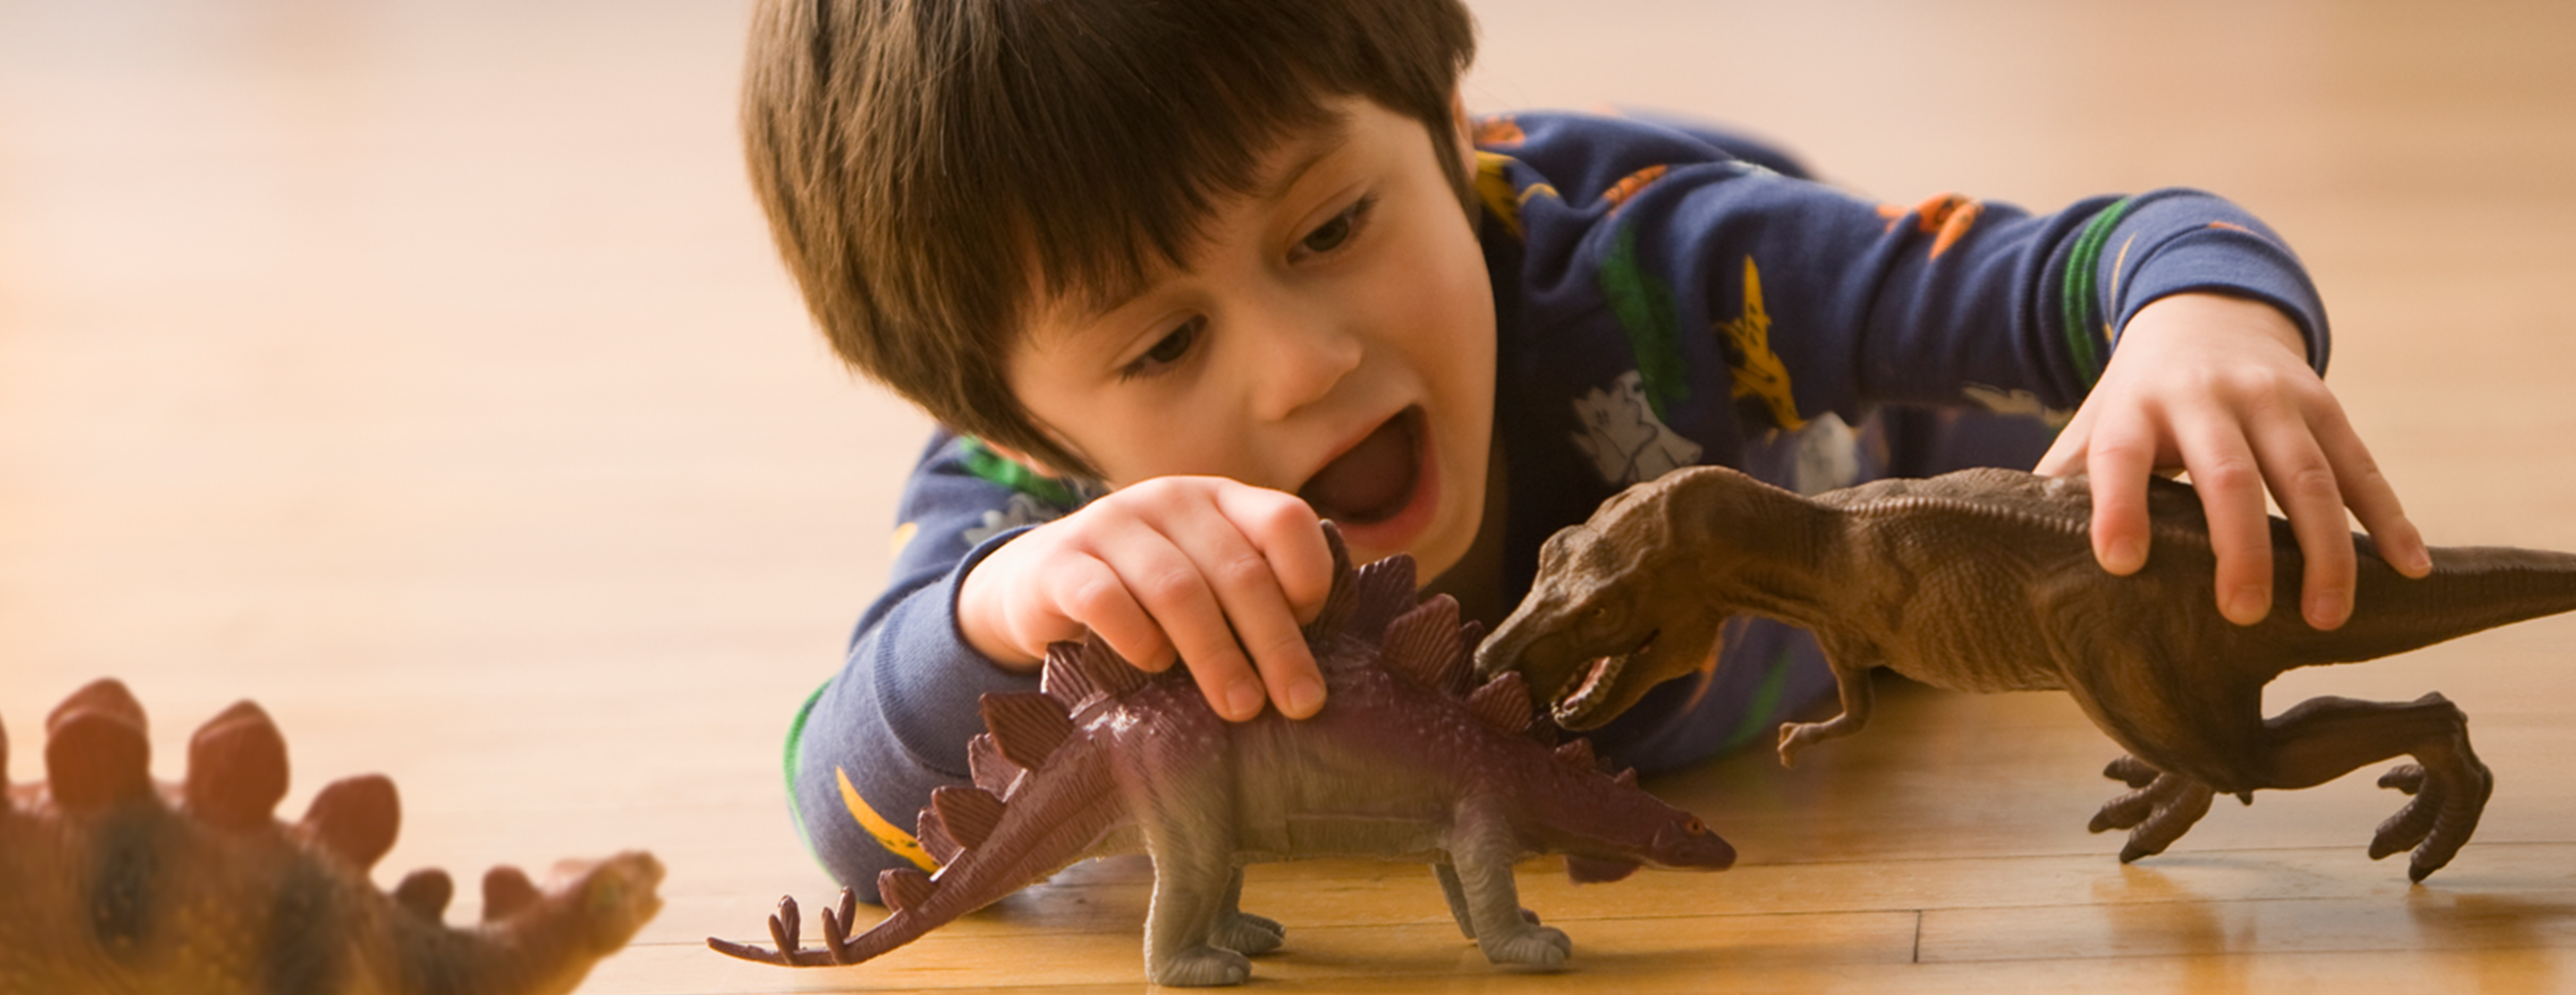 Динозавры играют дети. Динозавры для детей. Мальчик и динозавр. Агрессивные игрушки. Агрессивные игрушки для детей.